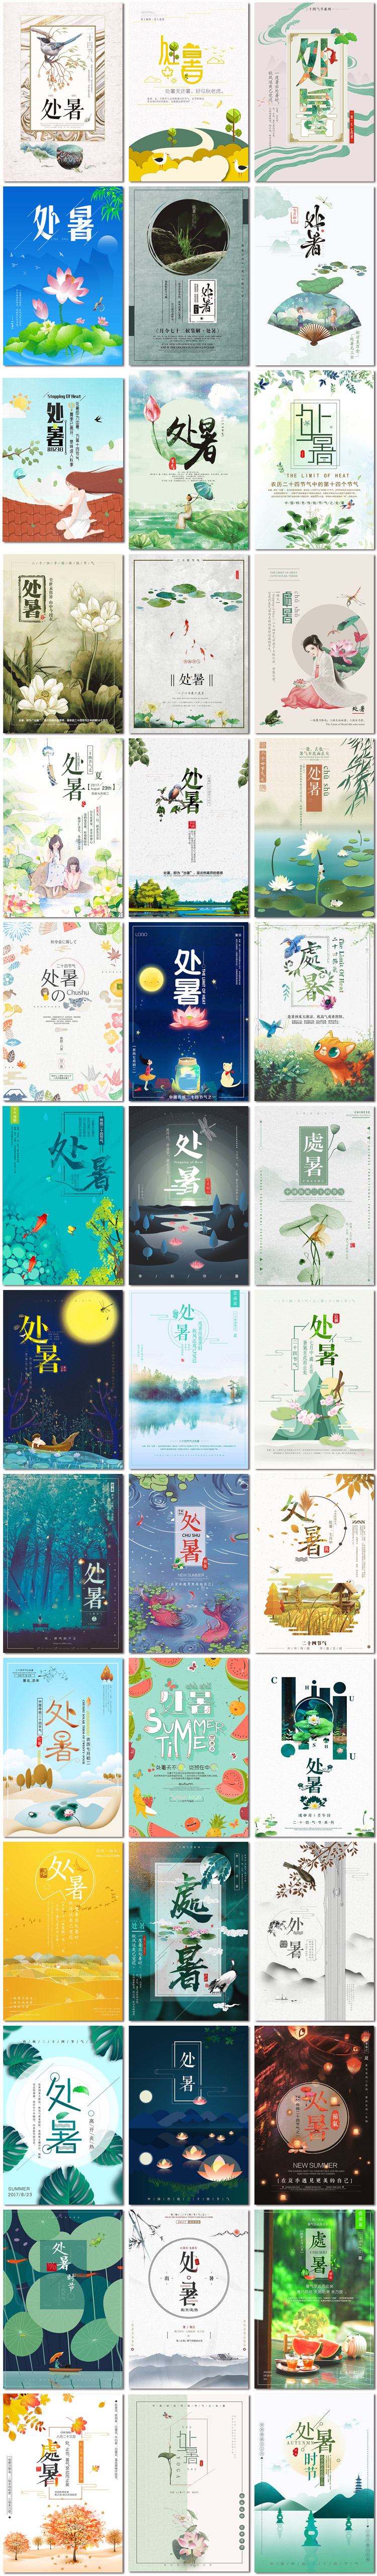 处暑二十四节气中国传统节日活动宣传海报插画PSD素材模版设计